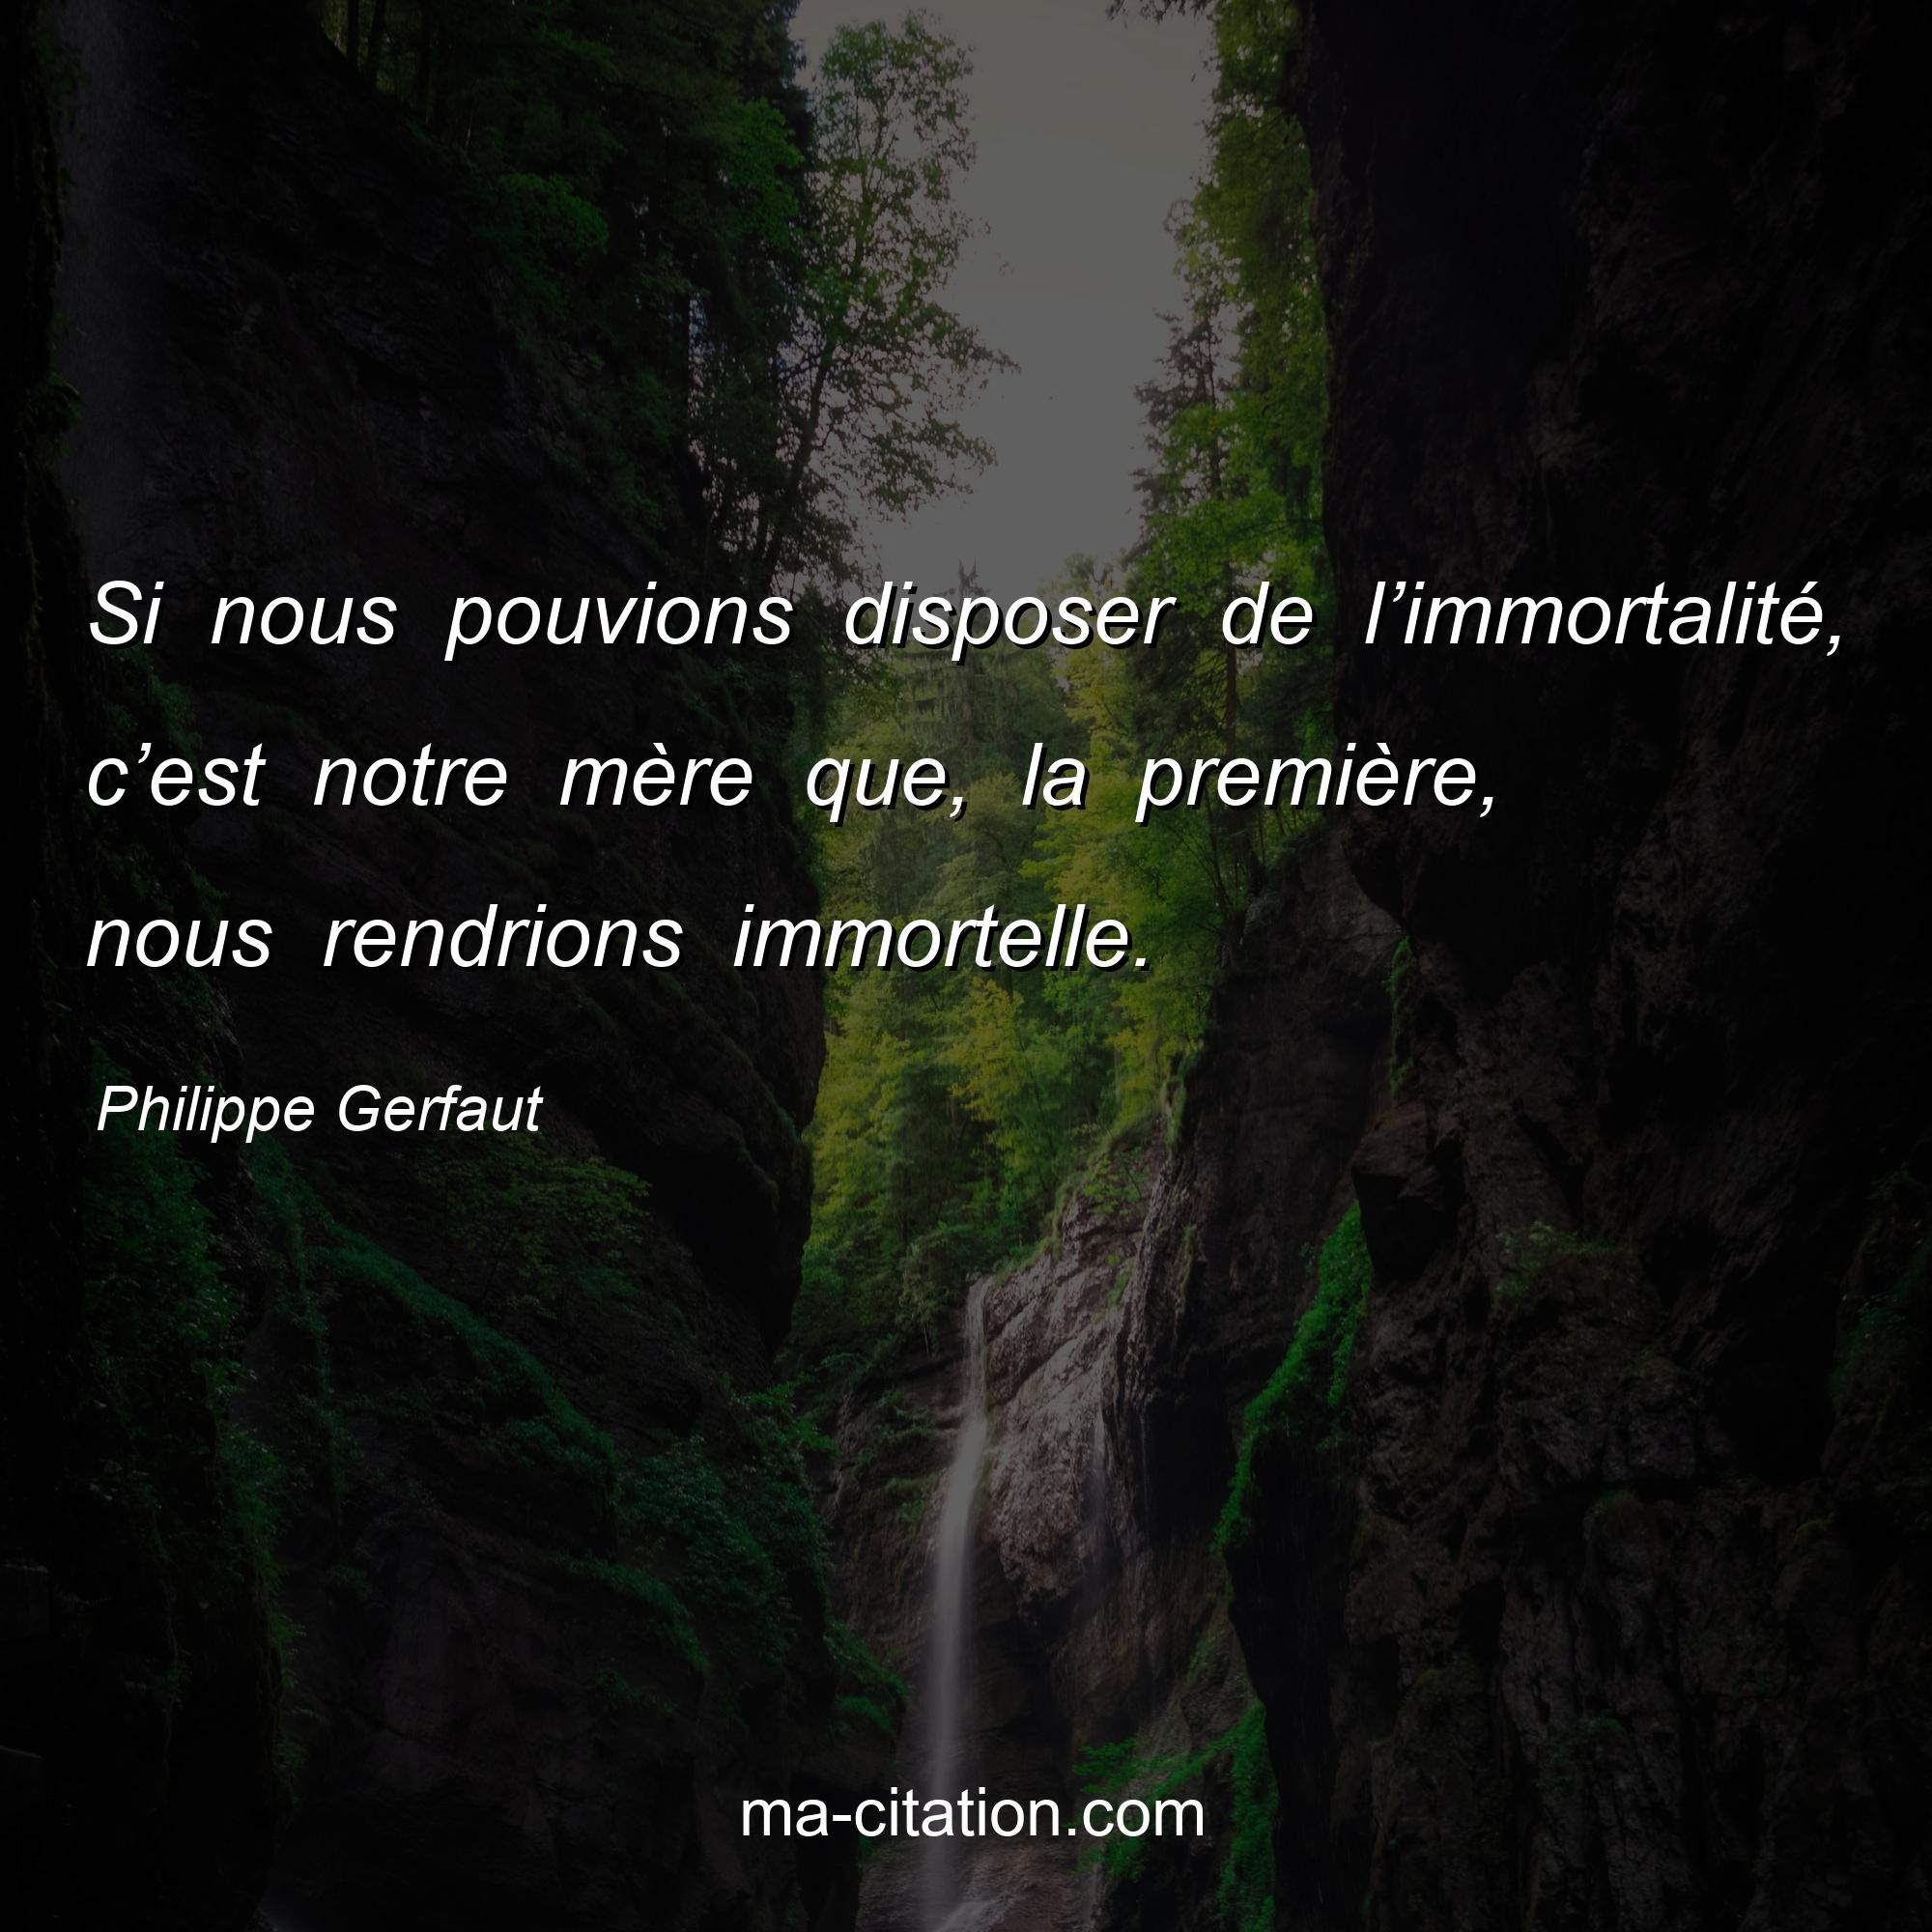 Philippe Gerfaut : Si nous pouvions disposer de l’immortalité, c’est notre mère que, la première, nous rendrions immortelle.